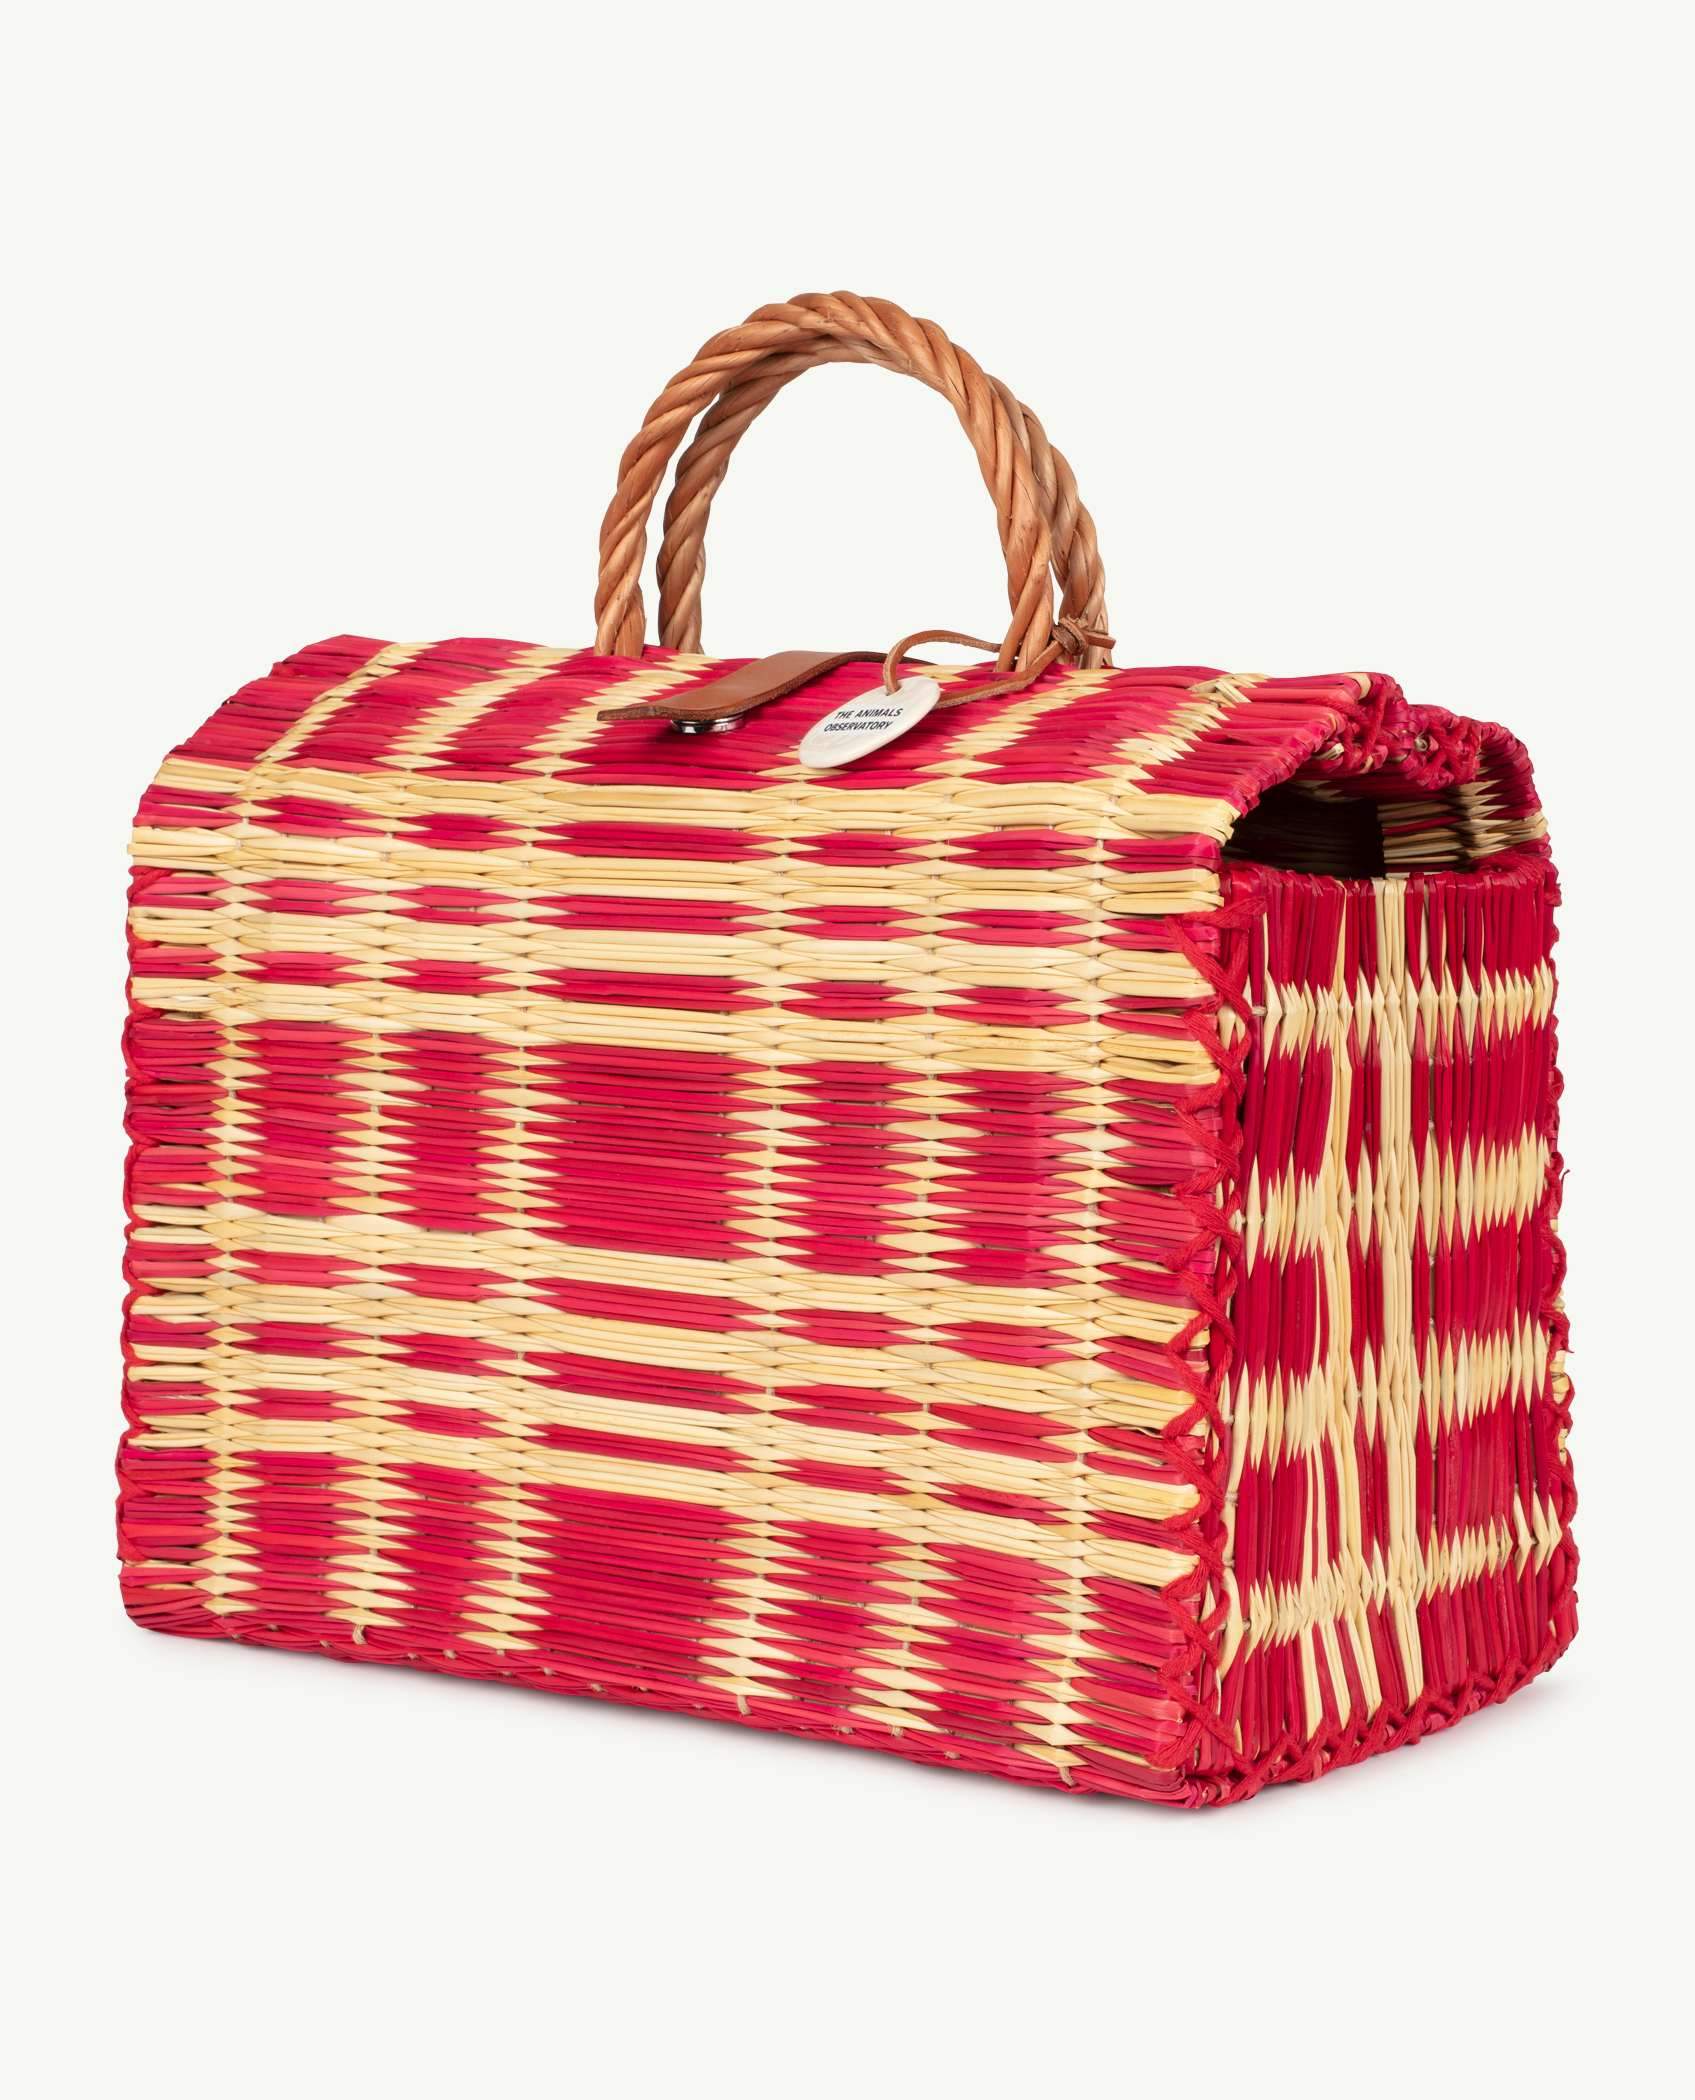 Red Basket Bag PRODUCT BACK